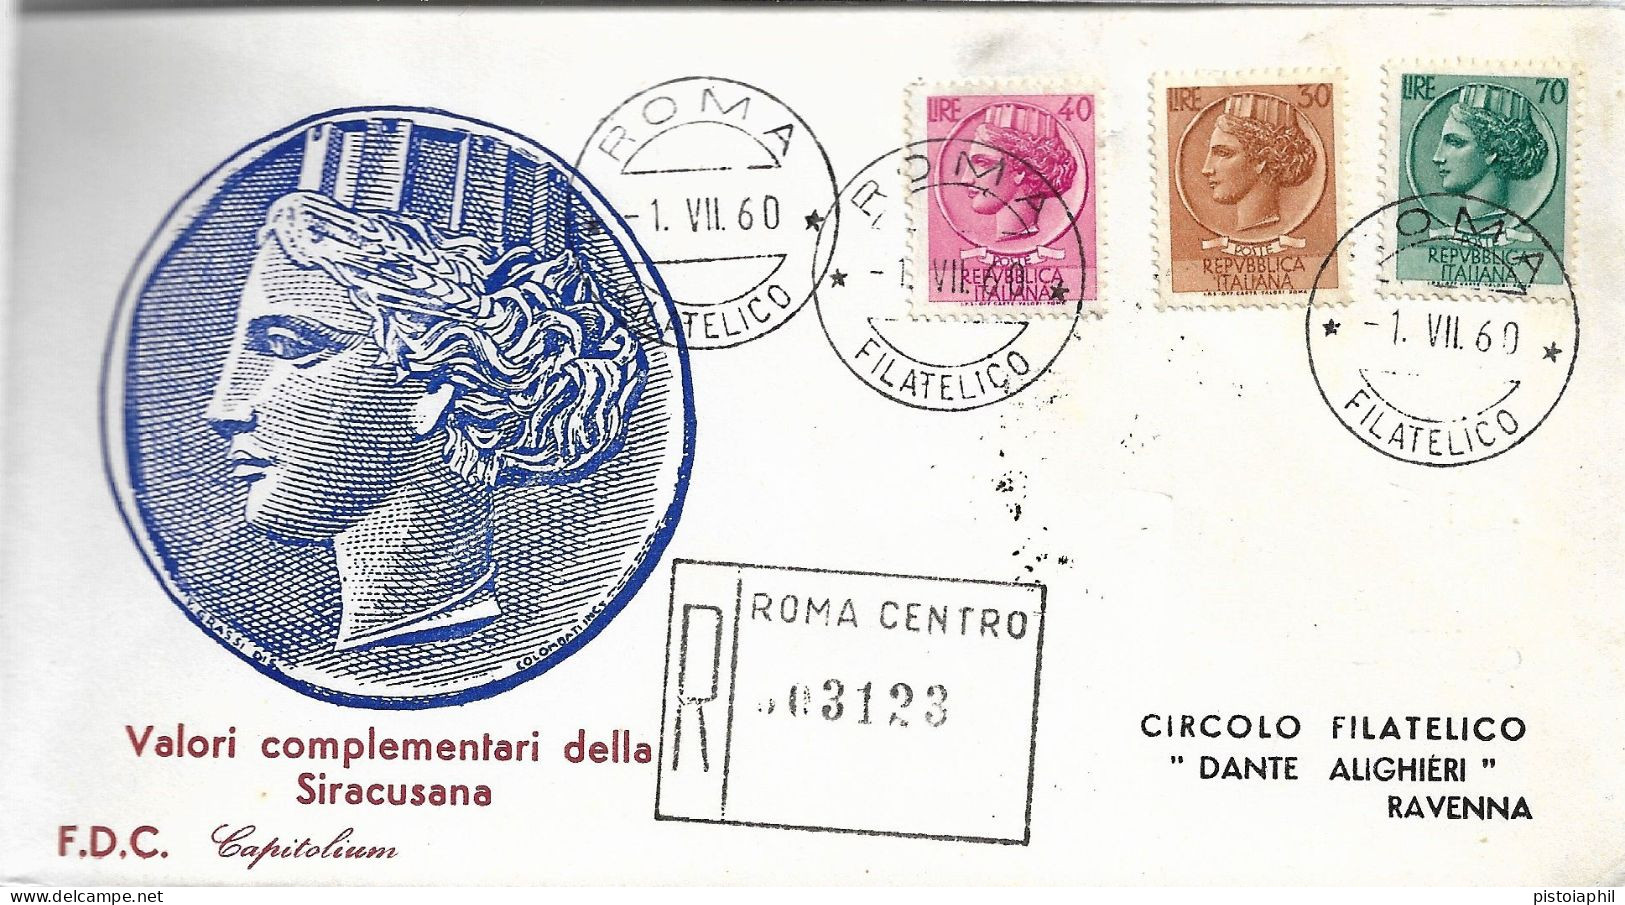 Fdc Capitolium: SIRACUSANA L. 30, 40 E 70 (1960); Raccomandata; Annullo Filatelico Roma - FDC